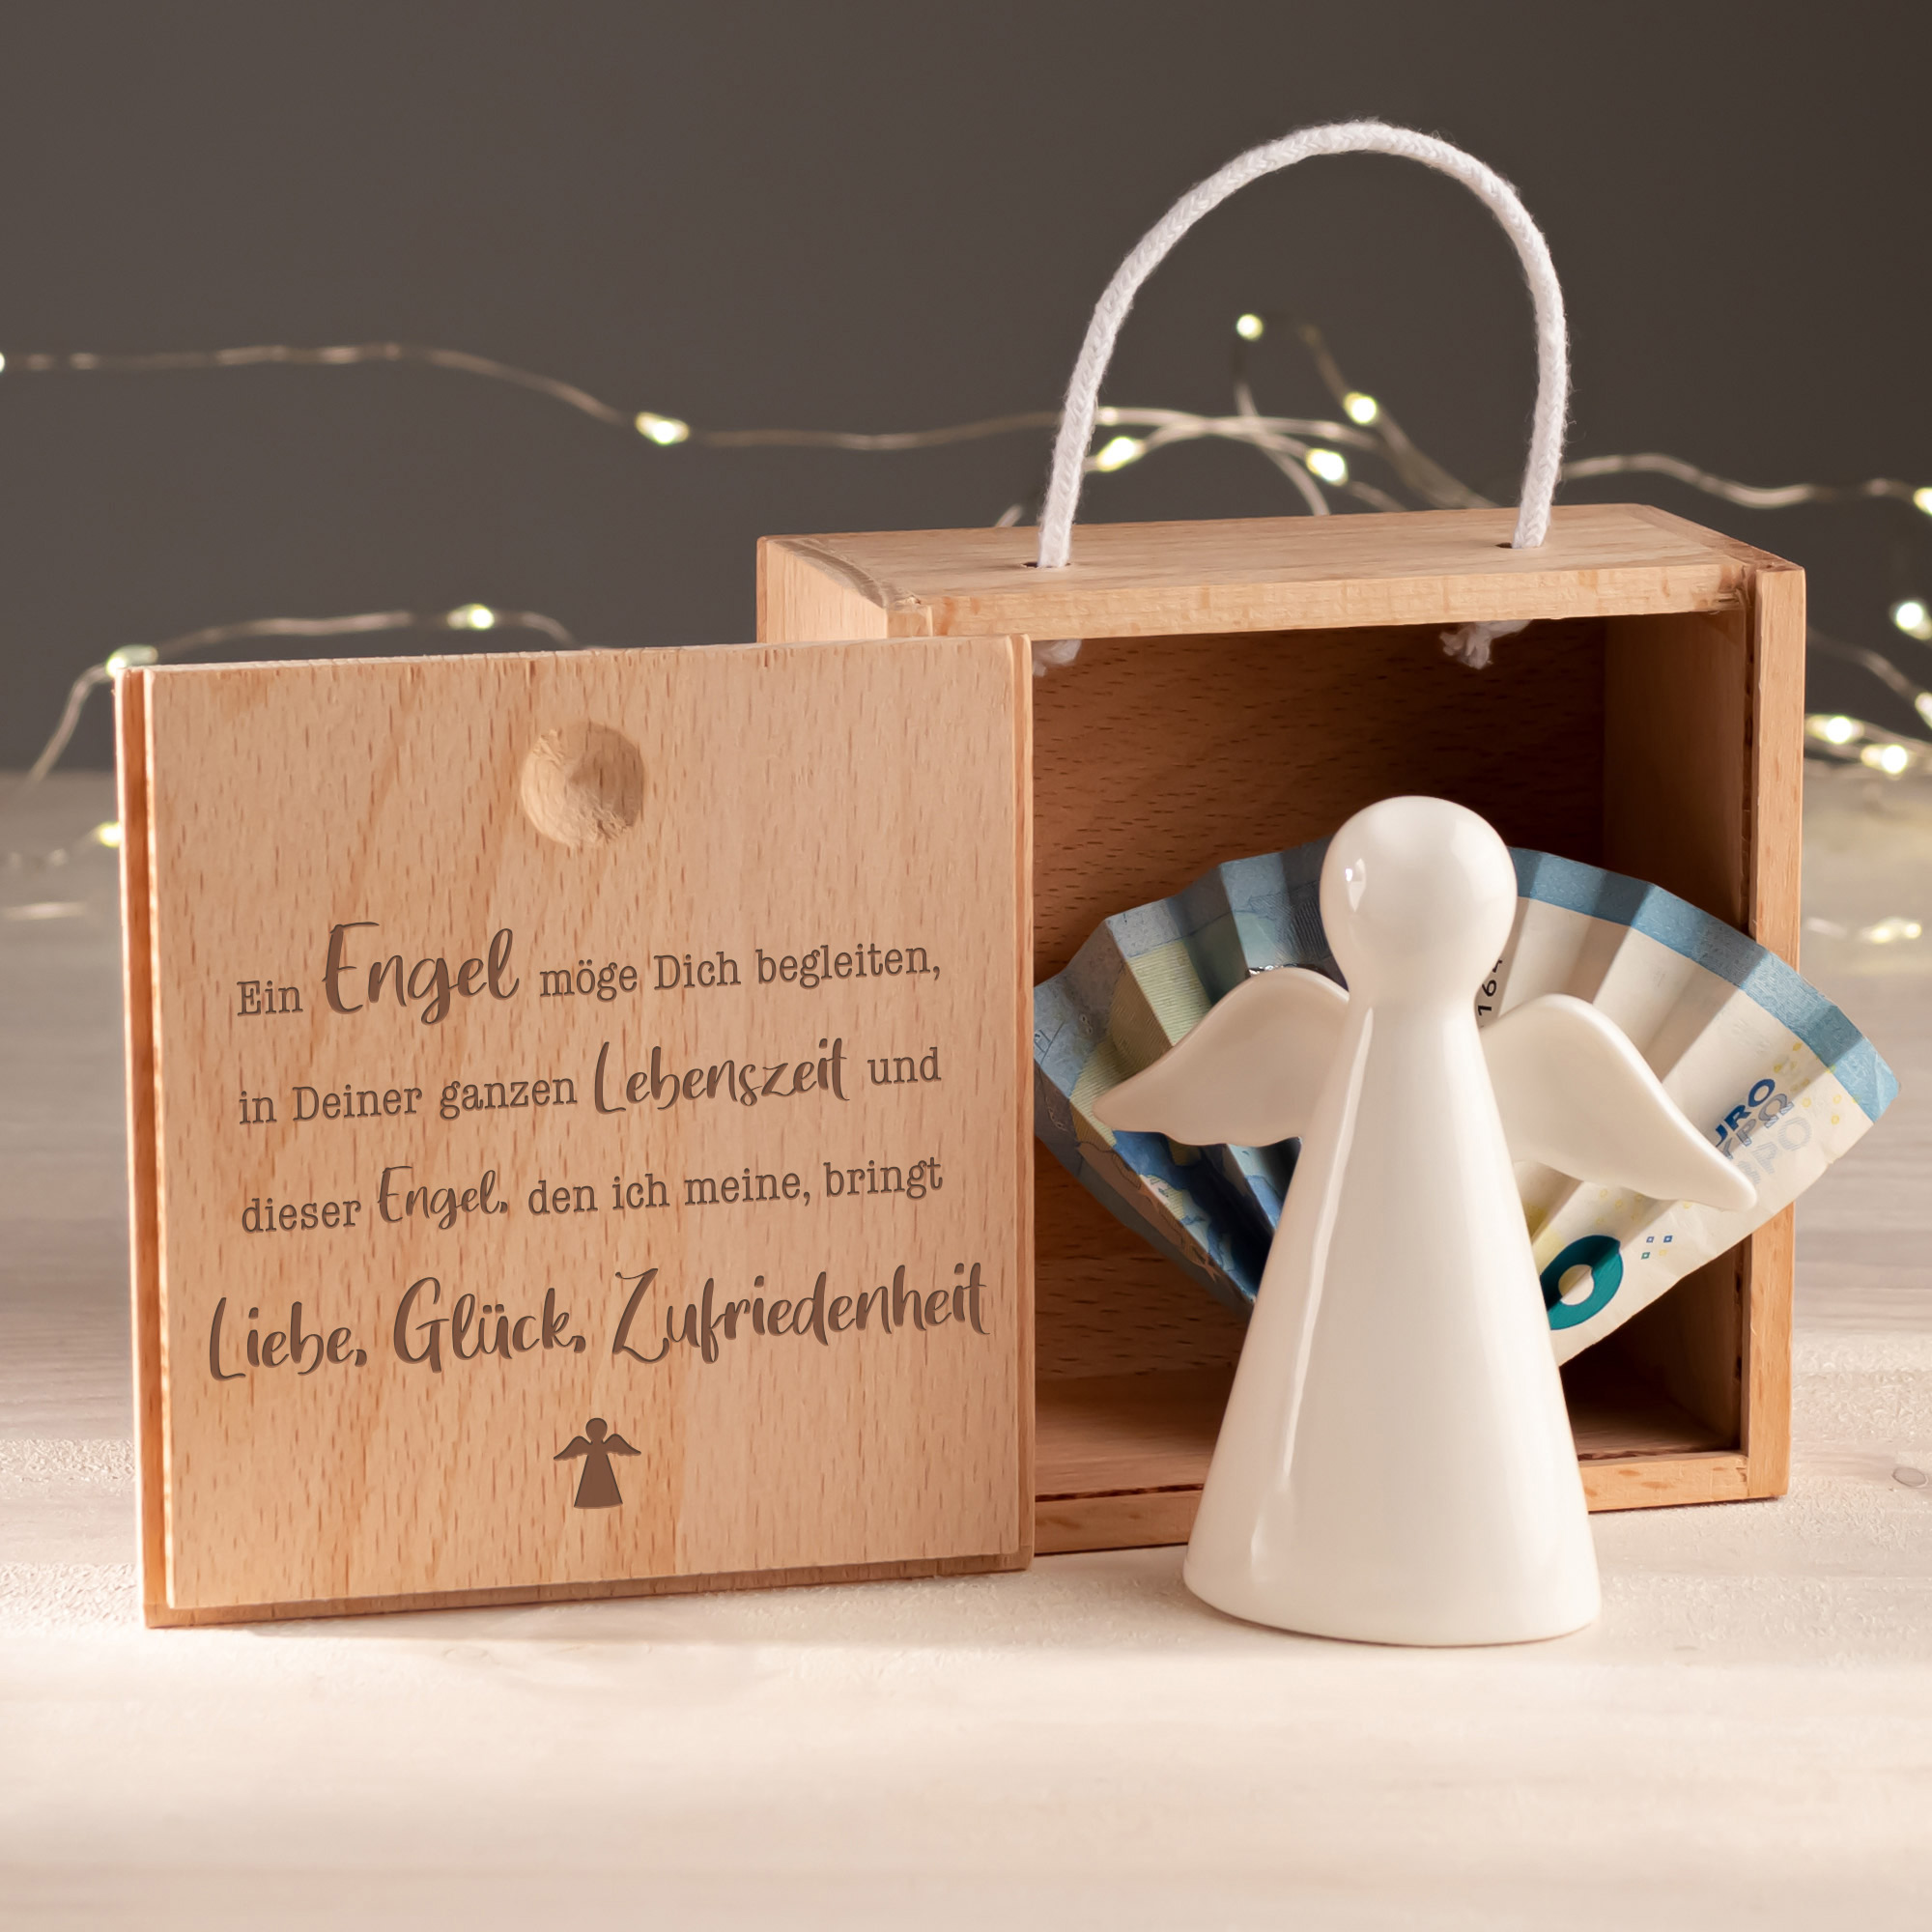 Schutzengel in gravierter Geschenkbox, Deko Engelfigur als Geldgeschenk Weihnachten, Engel in Holzbox mit graviertem Sprichwort als Glücksbringer